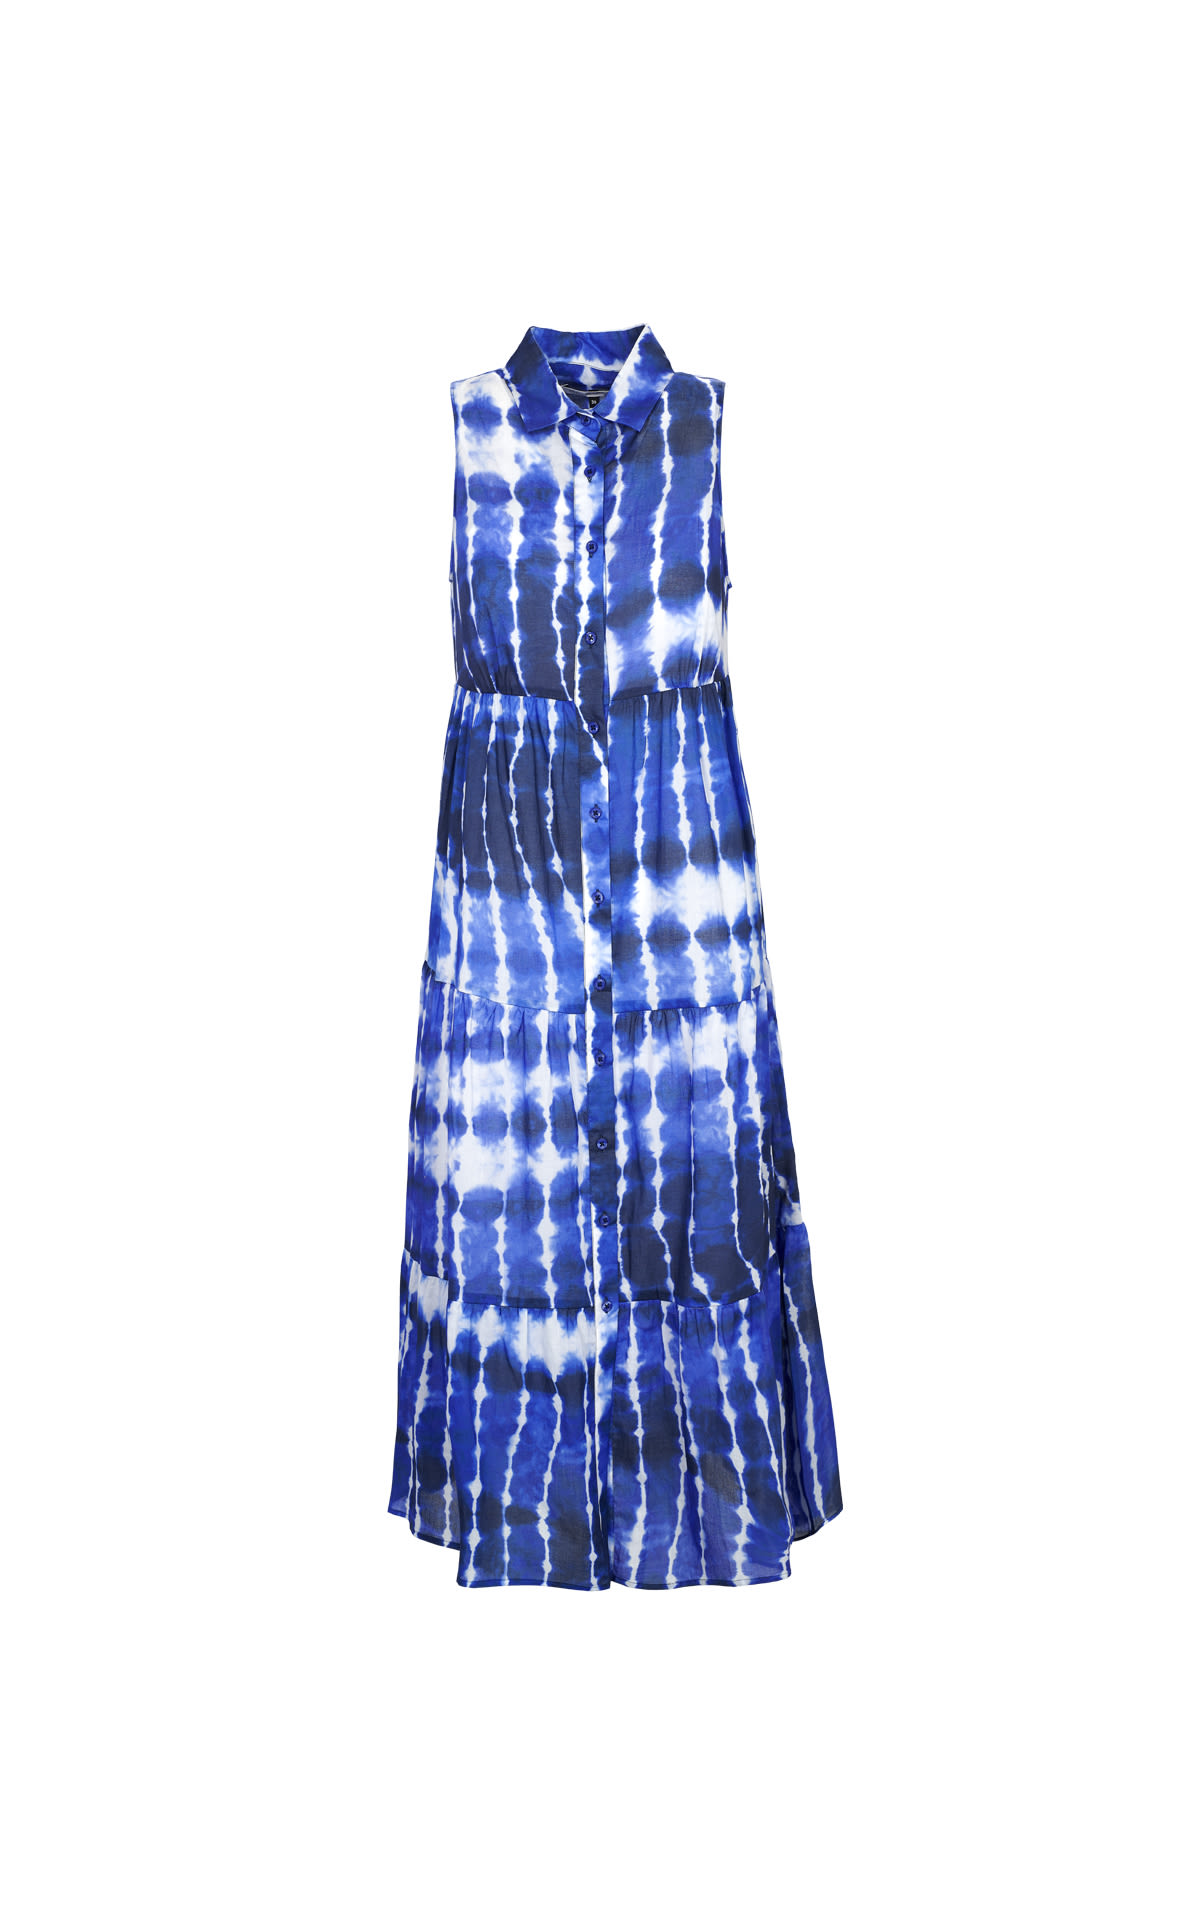 Printed blue tie dye dress Adolfo Dominguez